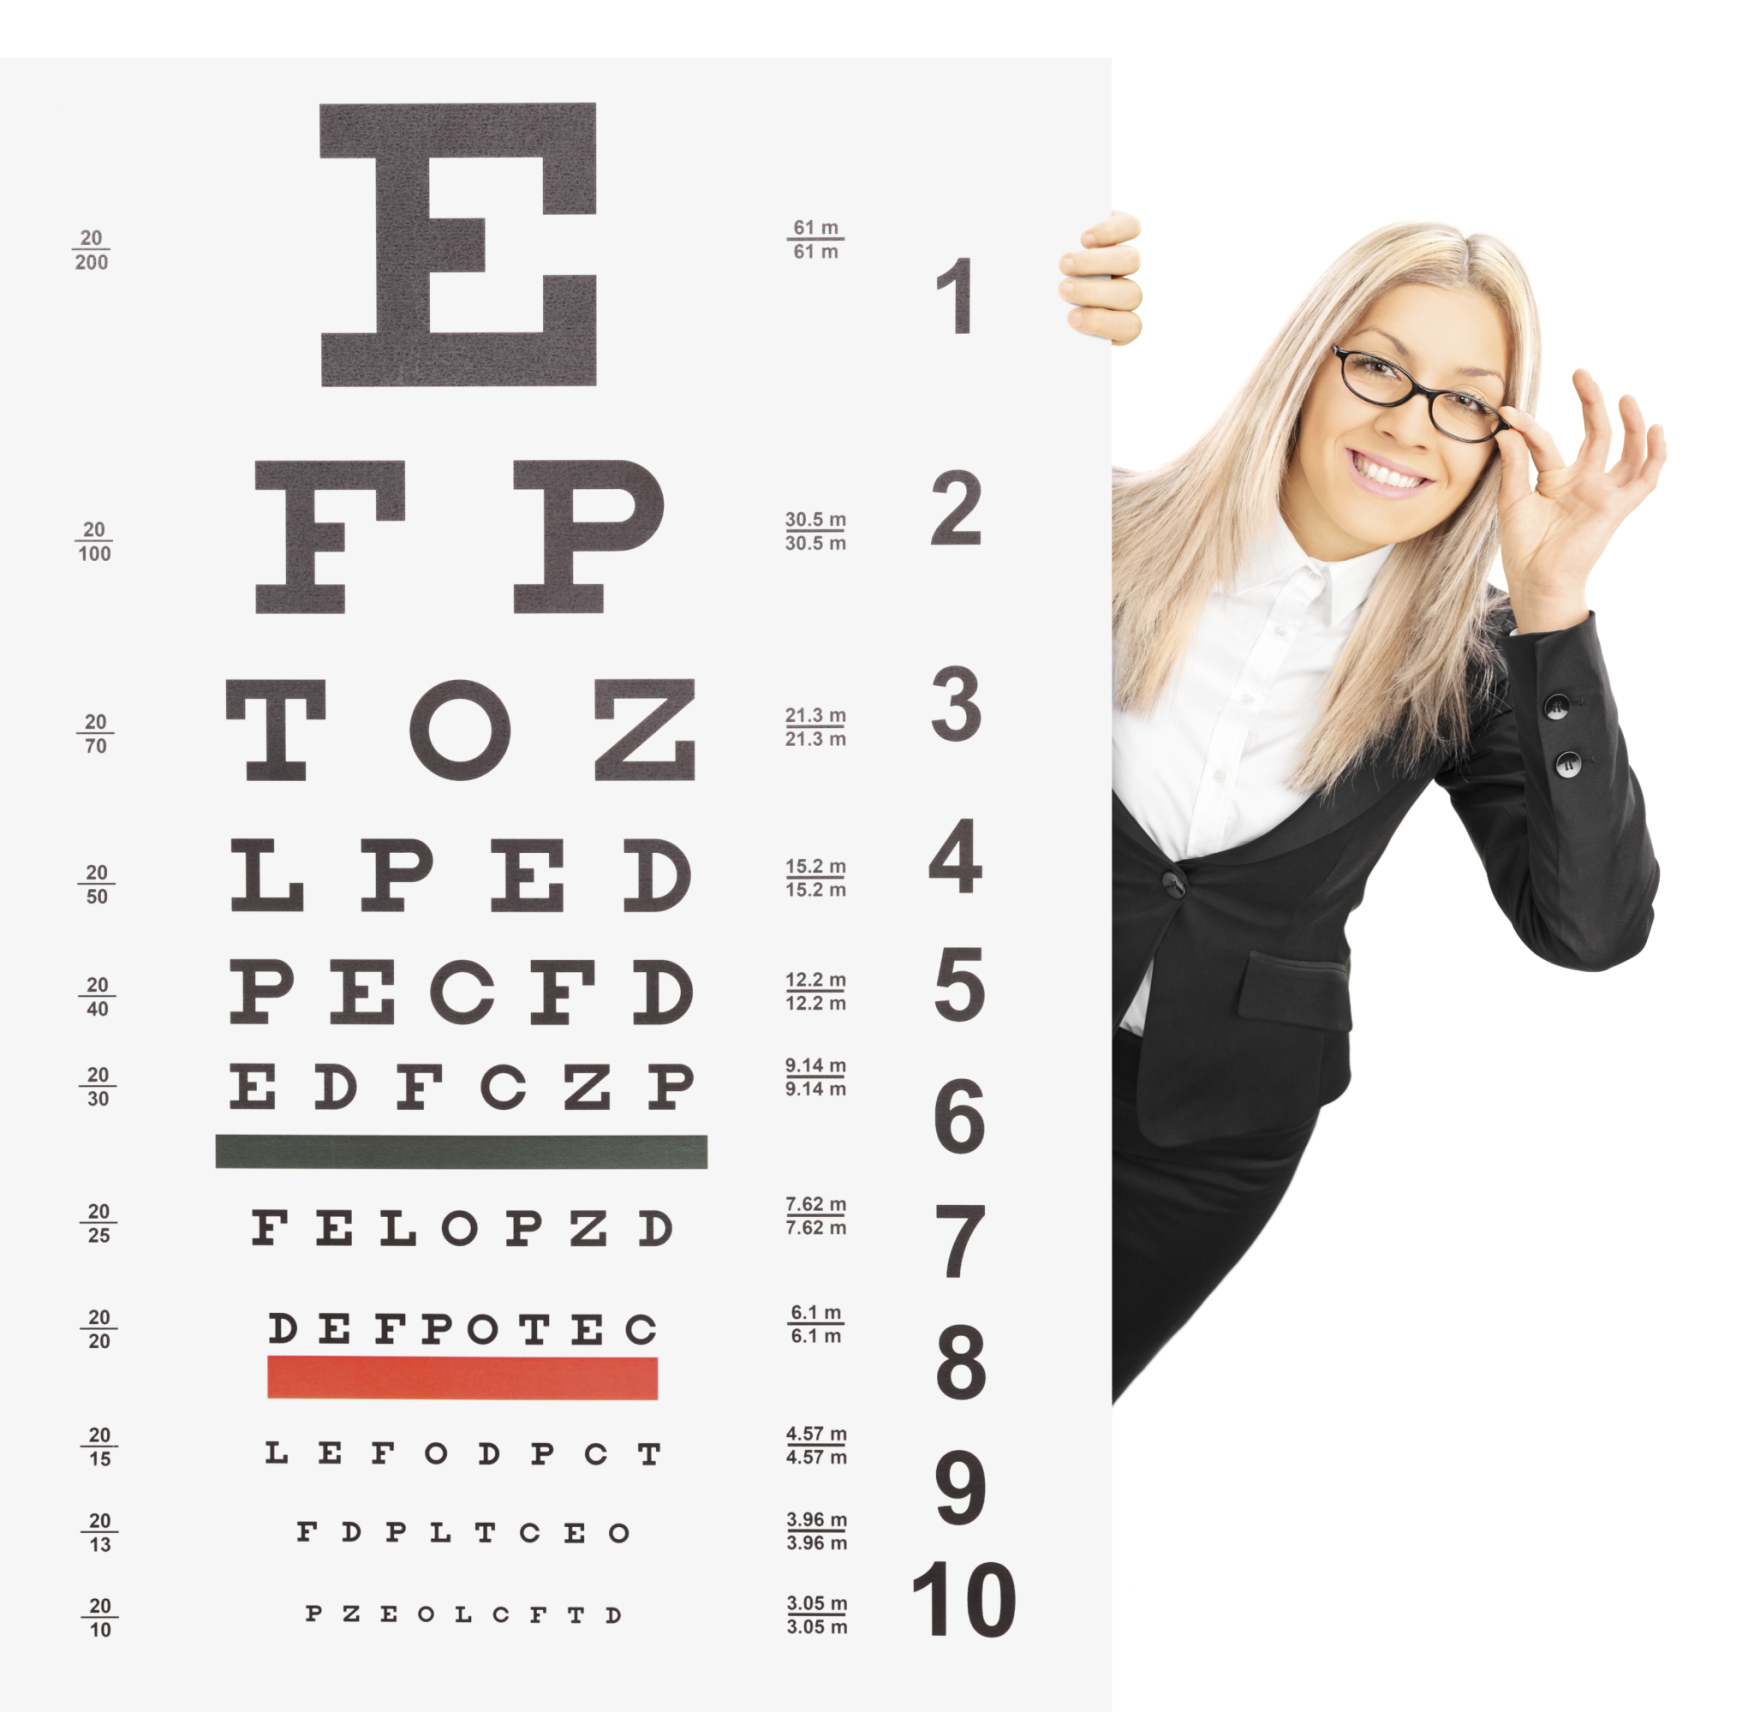 Vajon mennyire jó a látásod? Az alábbi tesztből kiderül!